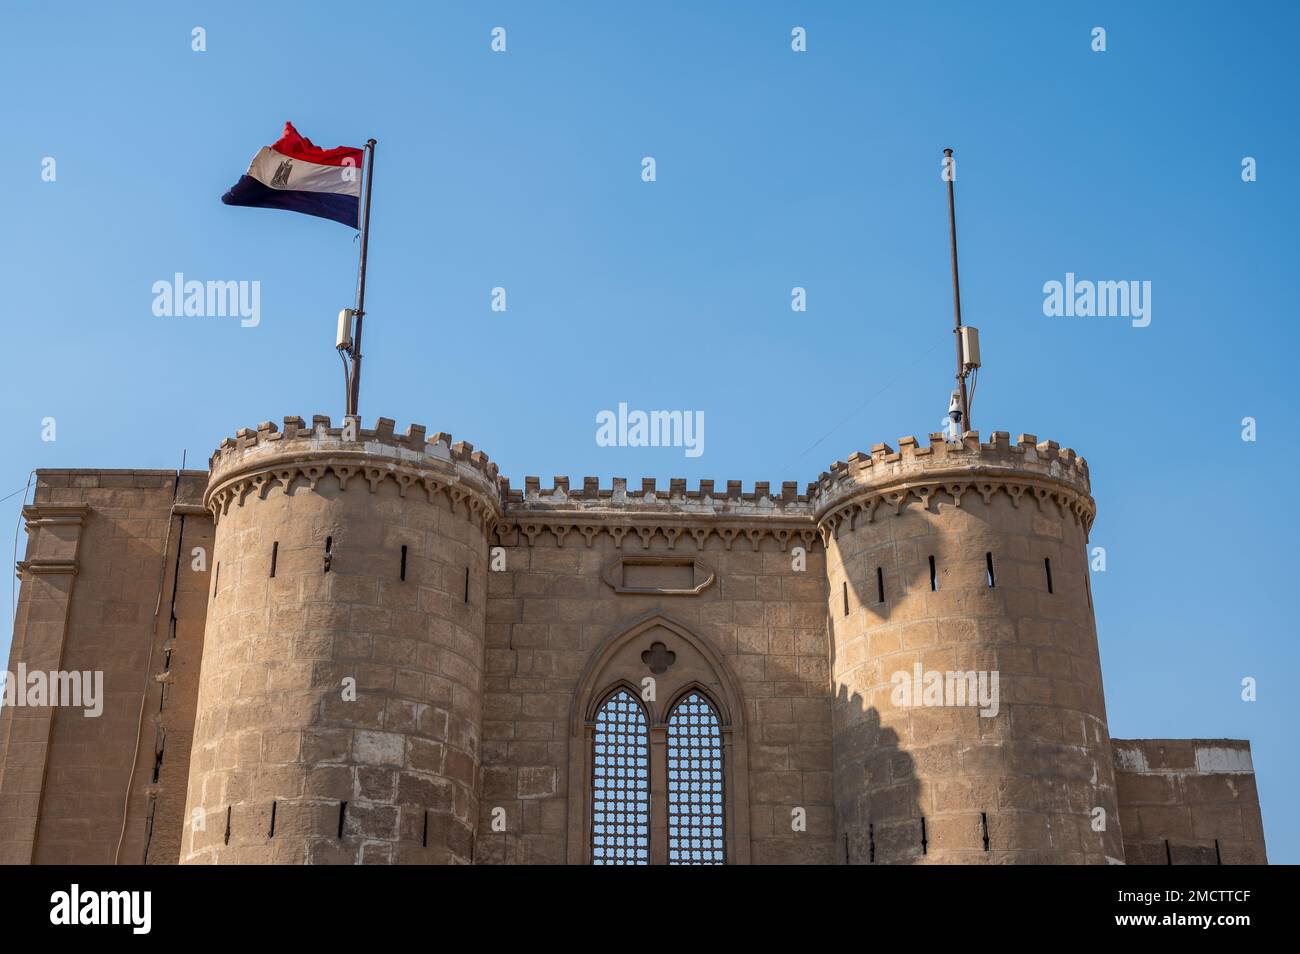 Egyptian flag flying on Salah El Din Citadel in Cairo, Egypt Stock Photo